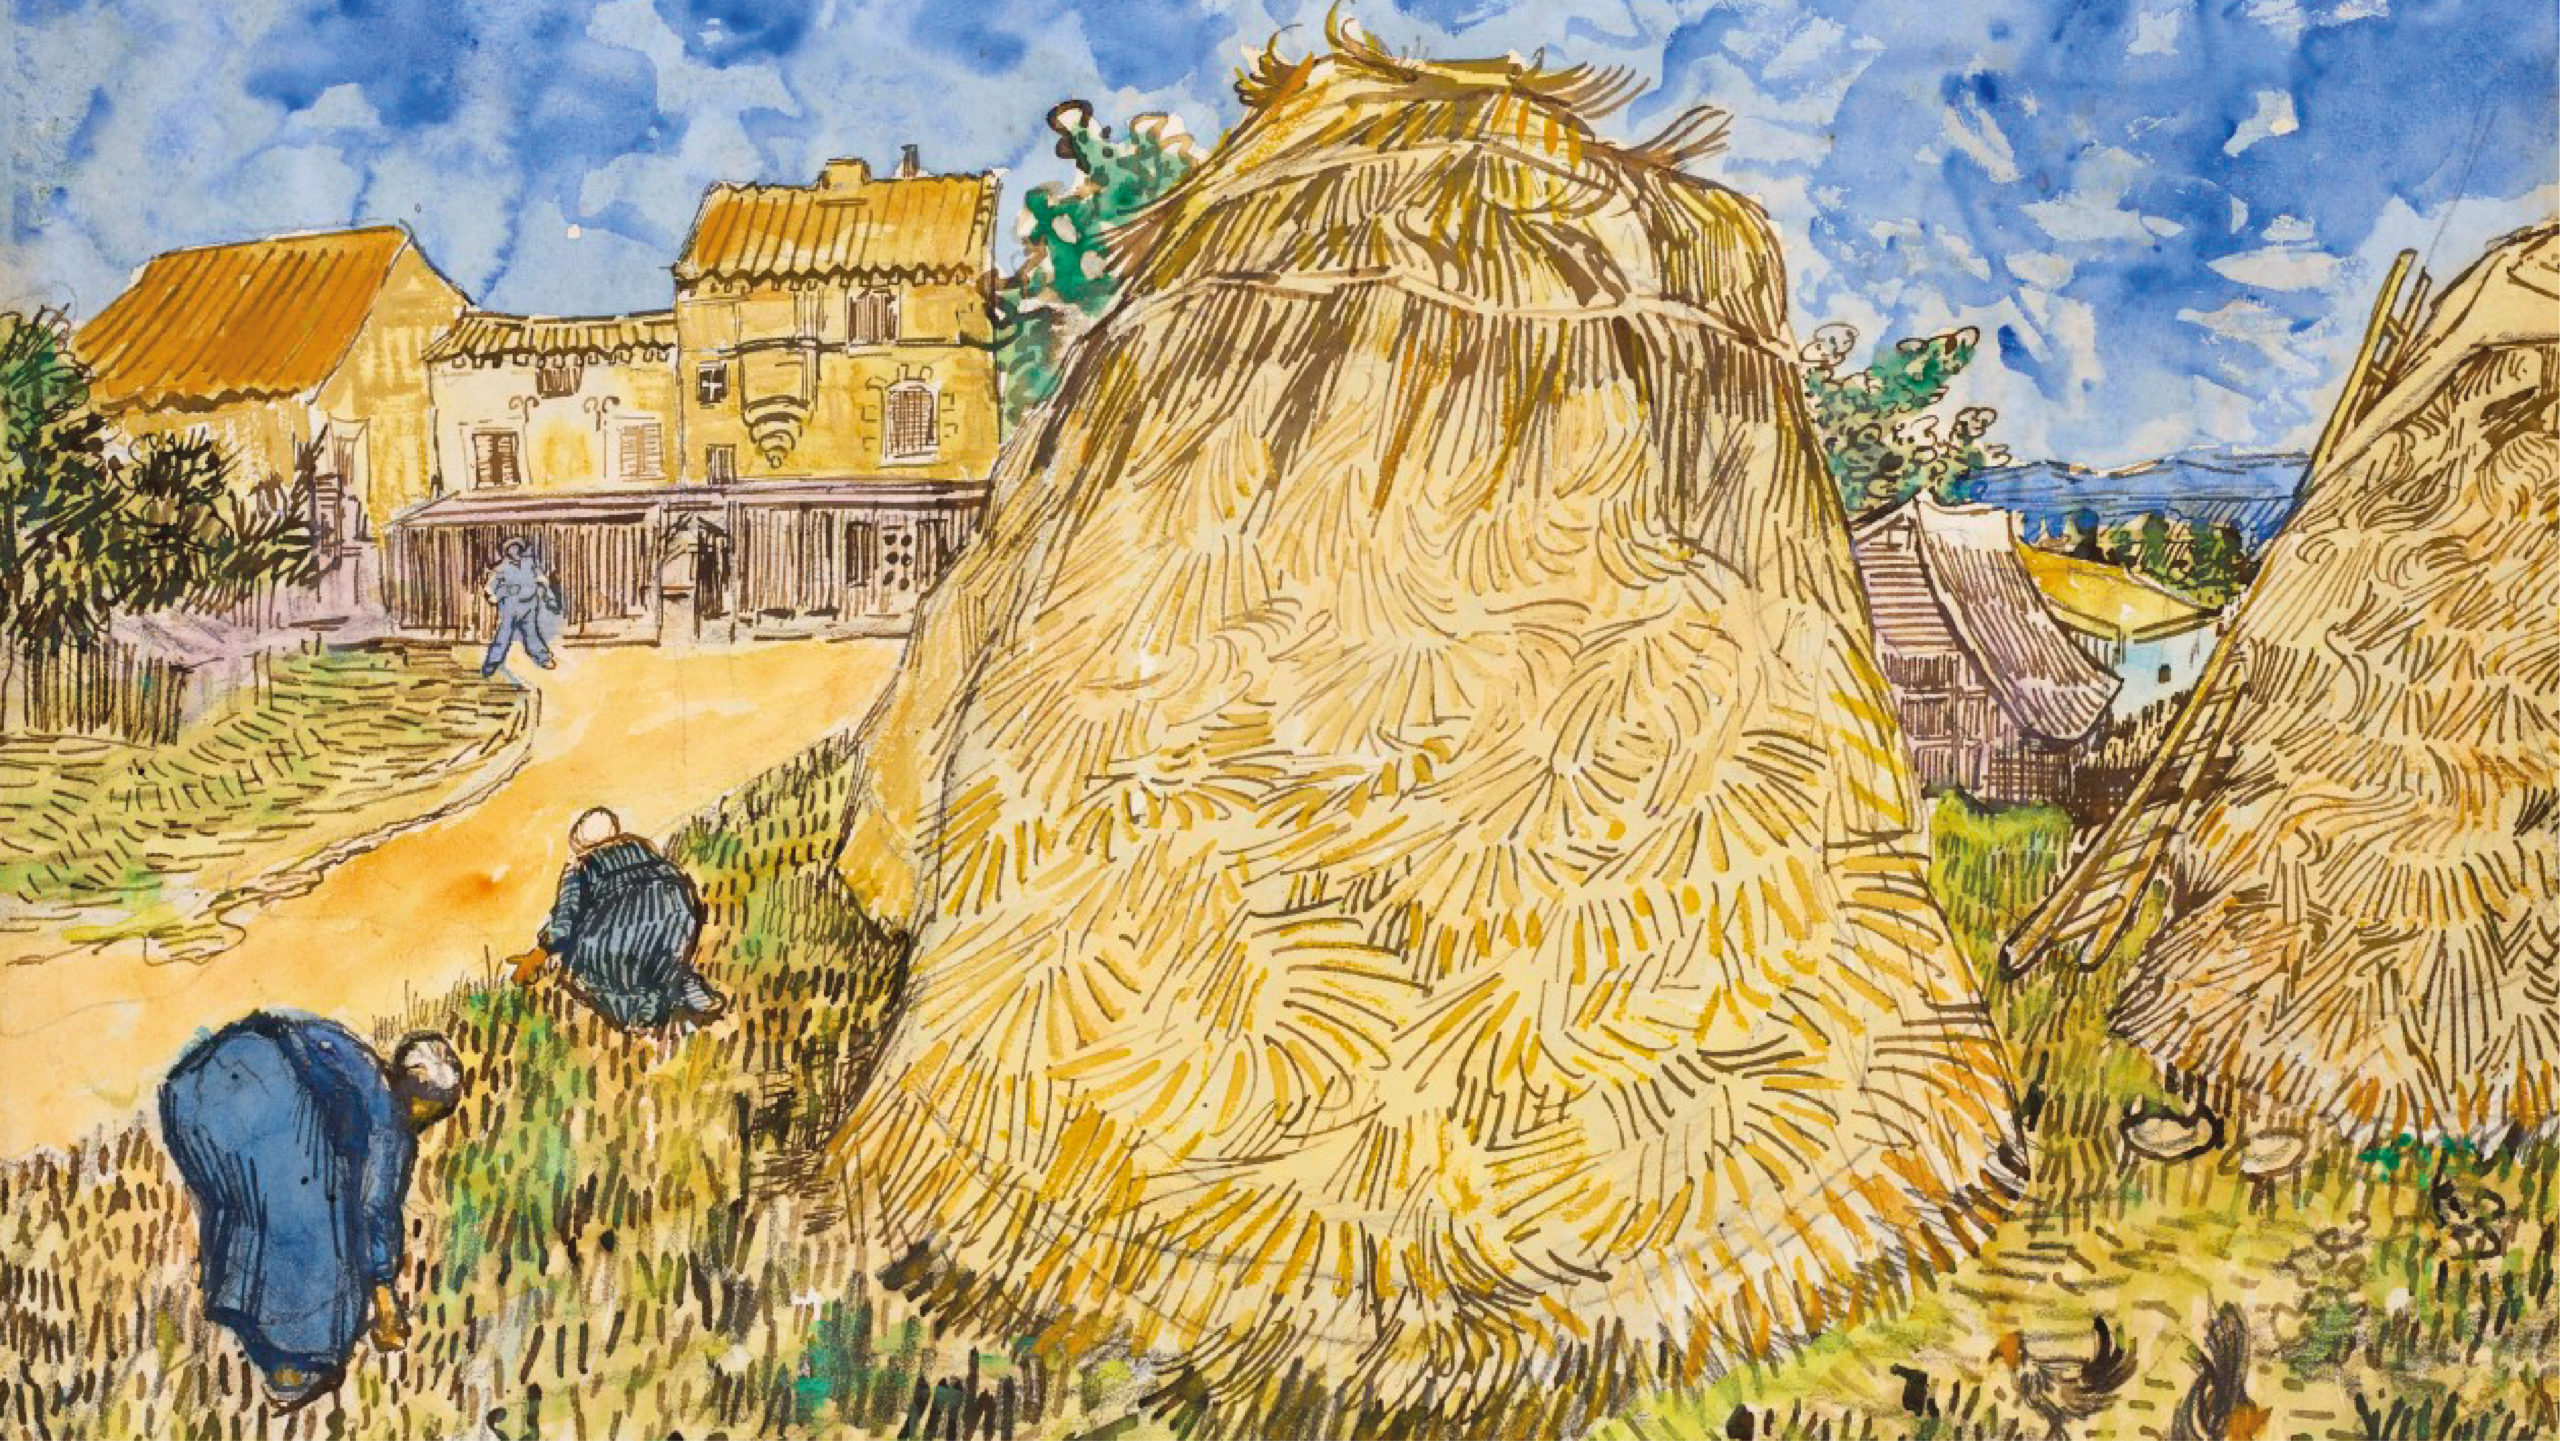 Subastan obras de Van Gogh y Picasso en Nueva York: suman 128 mdd